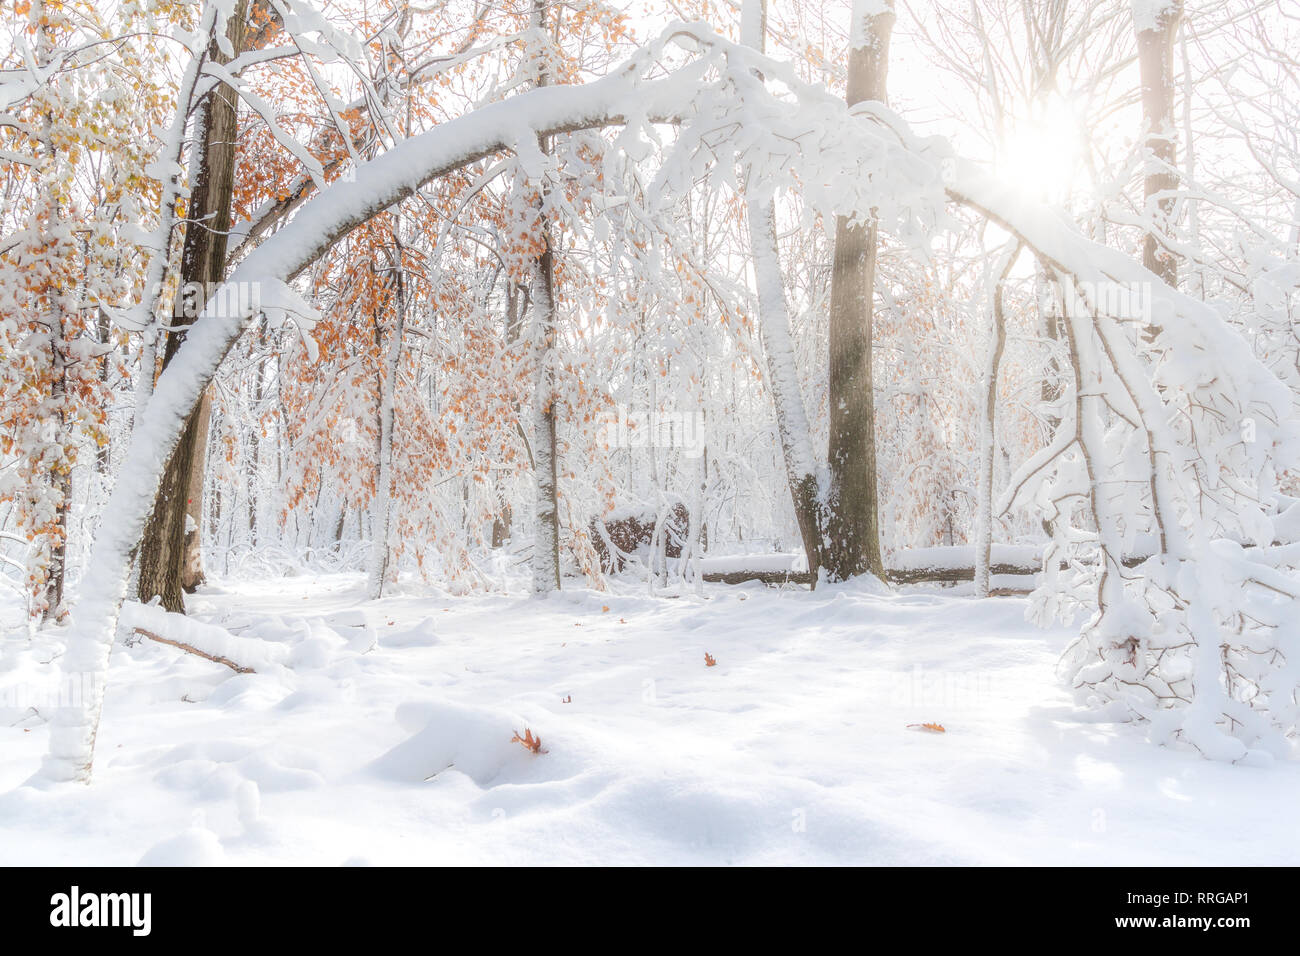 Arbre courbé sous une épaisse couche de neige dans une forêt du New Jersey Banque D'Images